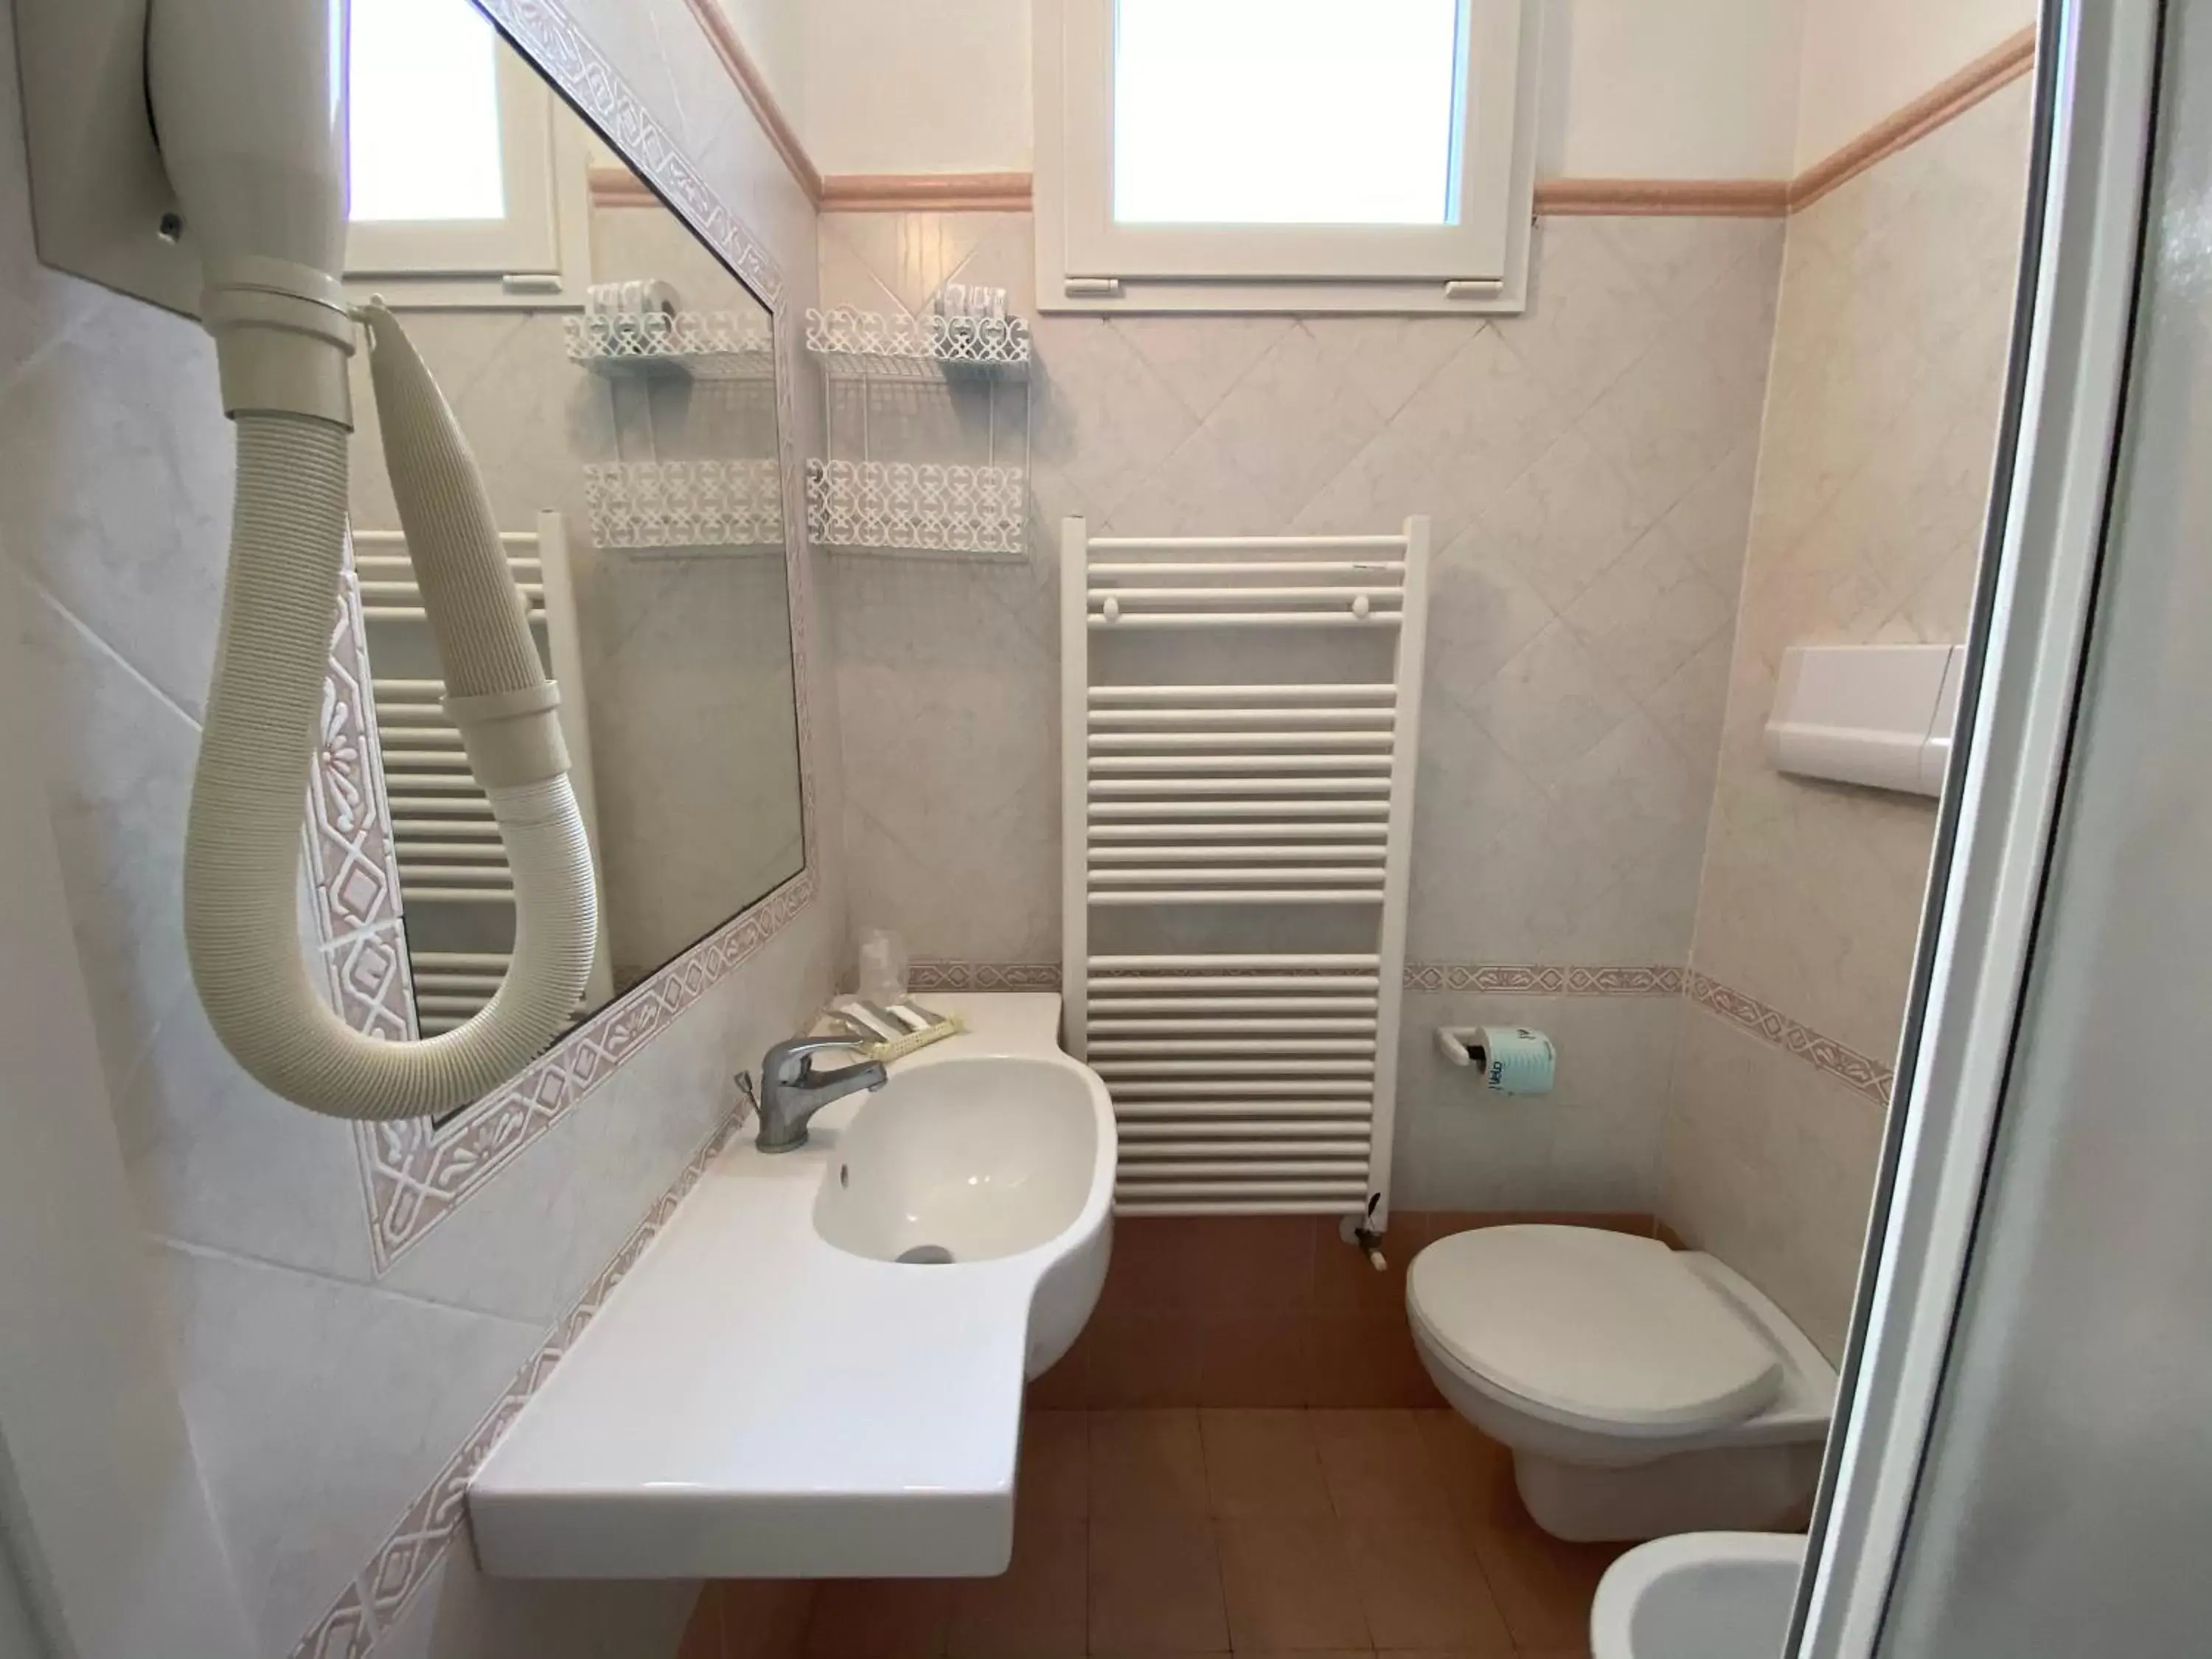 Toilet, Bathroom in Dipendenza Hotel Las Vegas